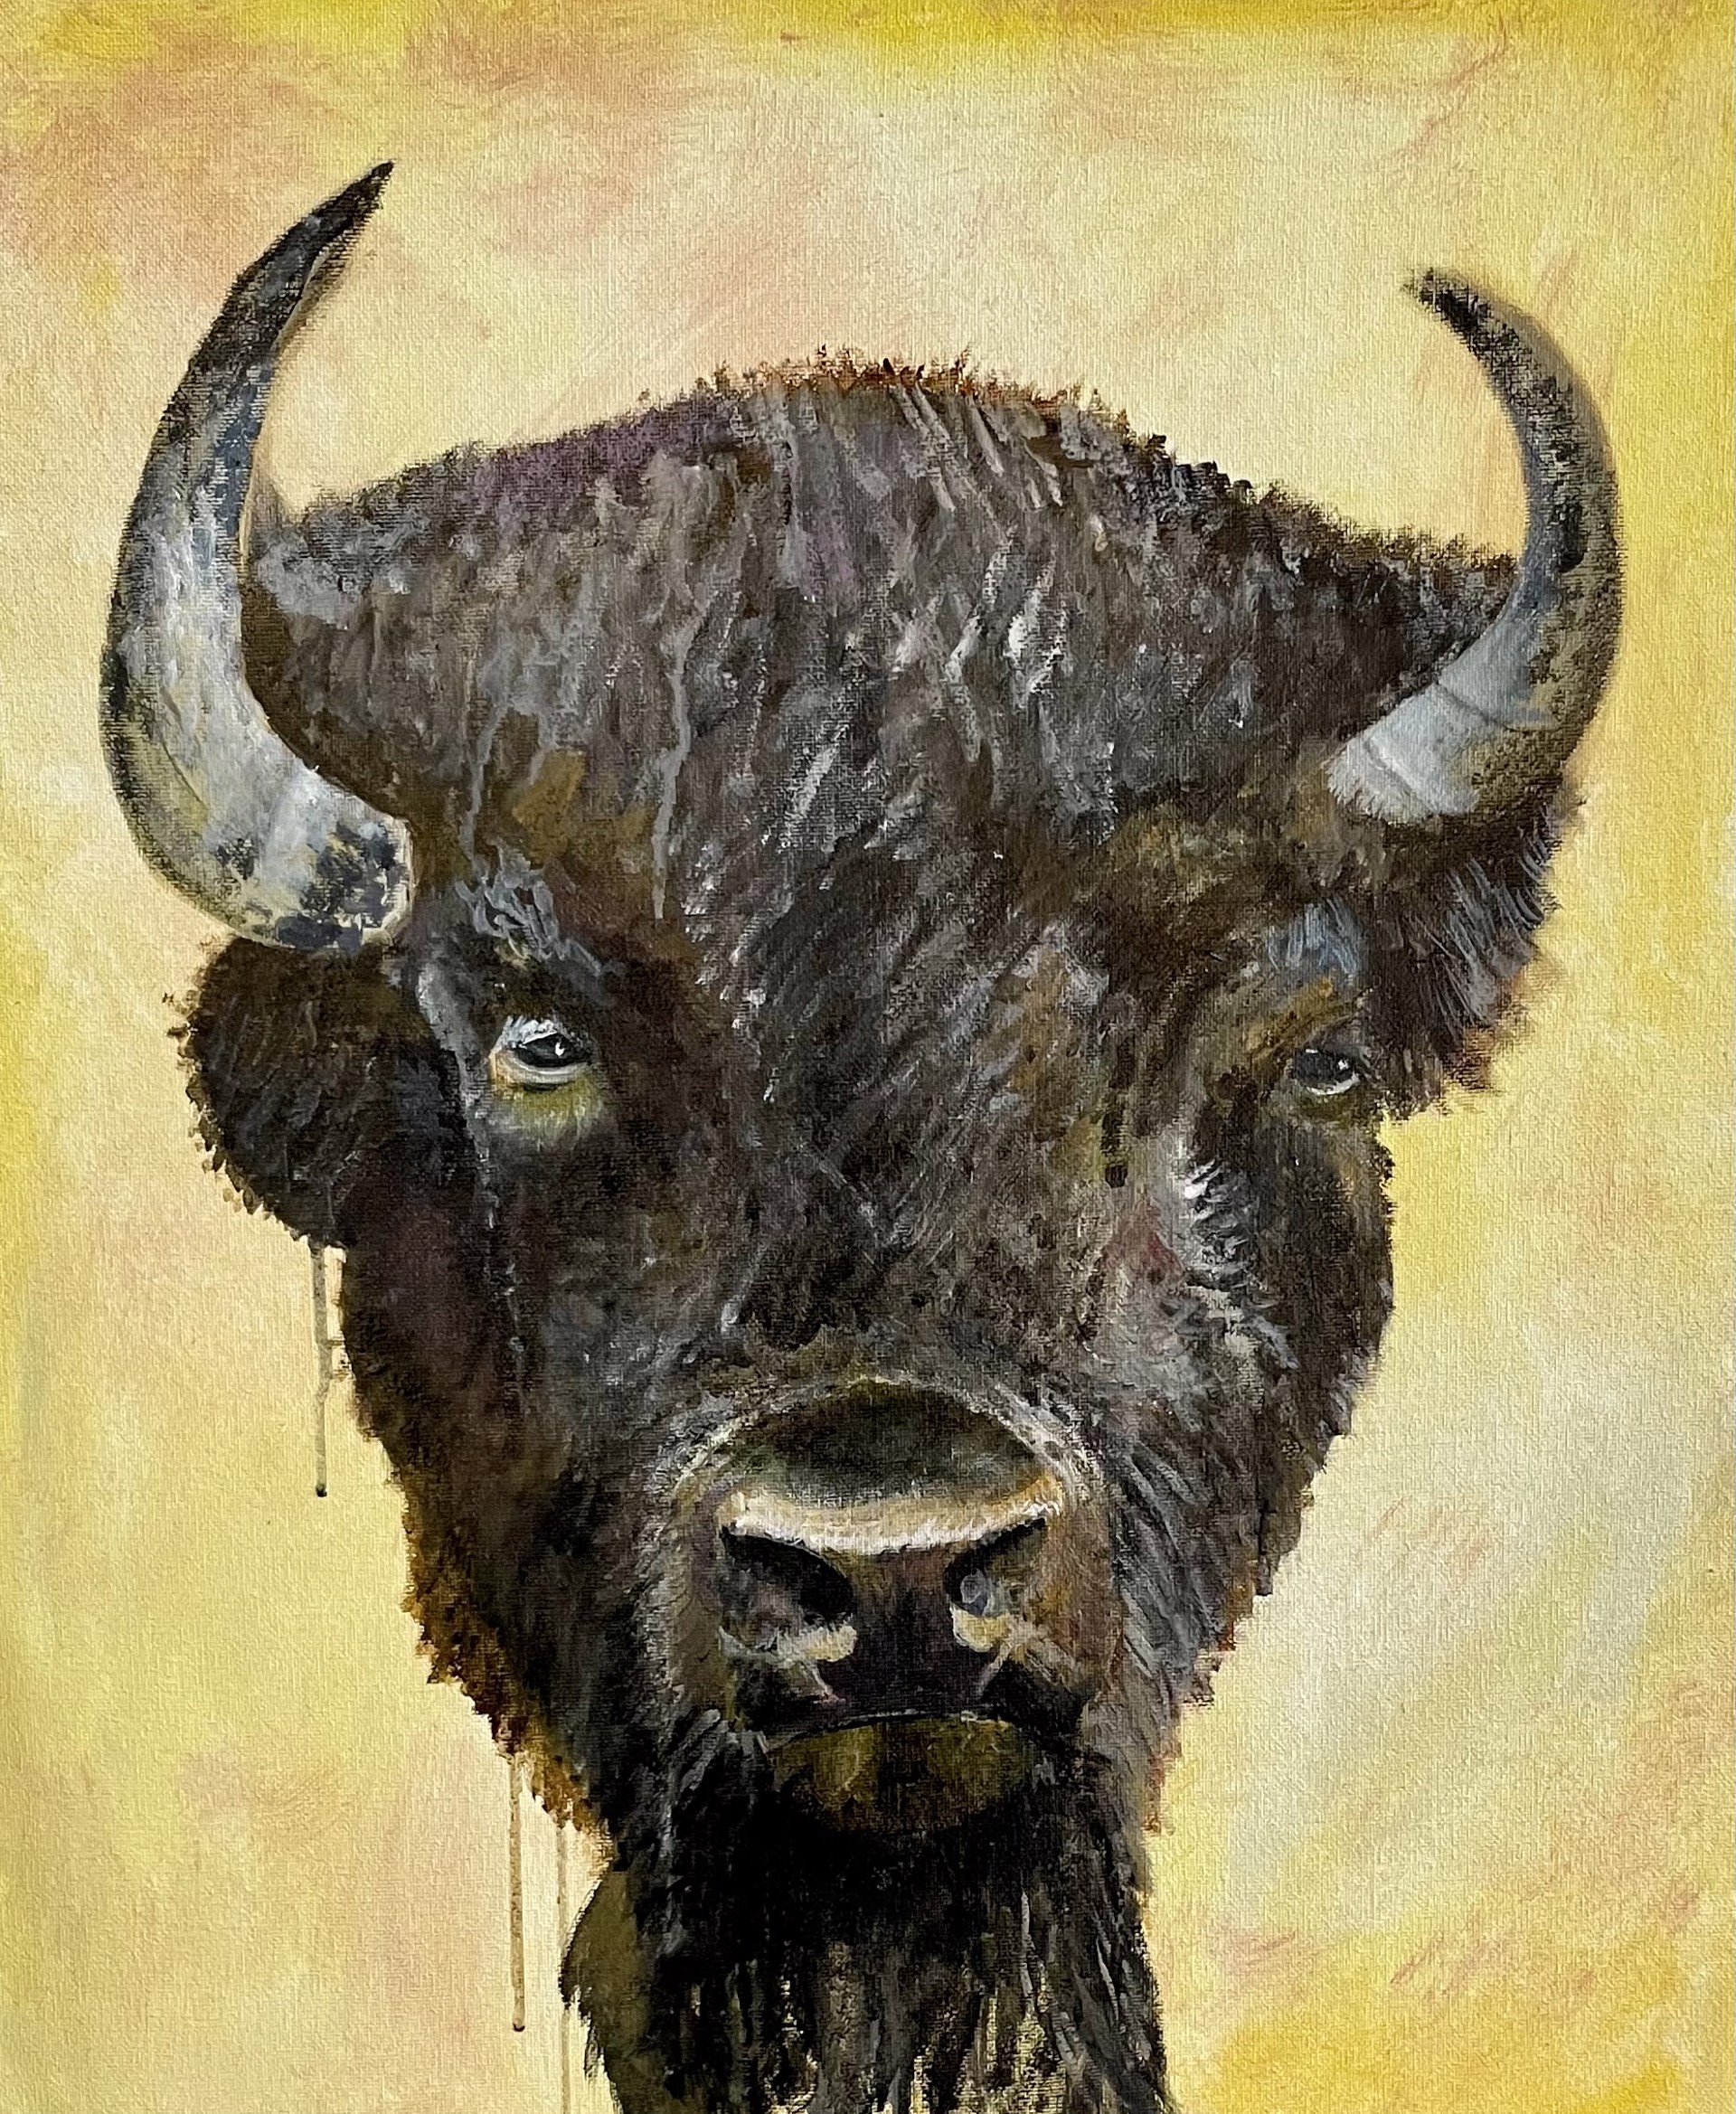 Bison 3 by Joe Broghammer